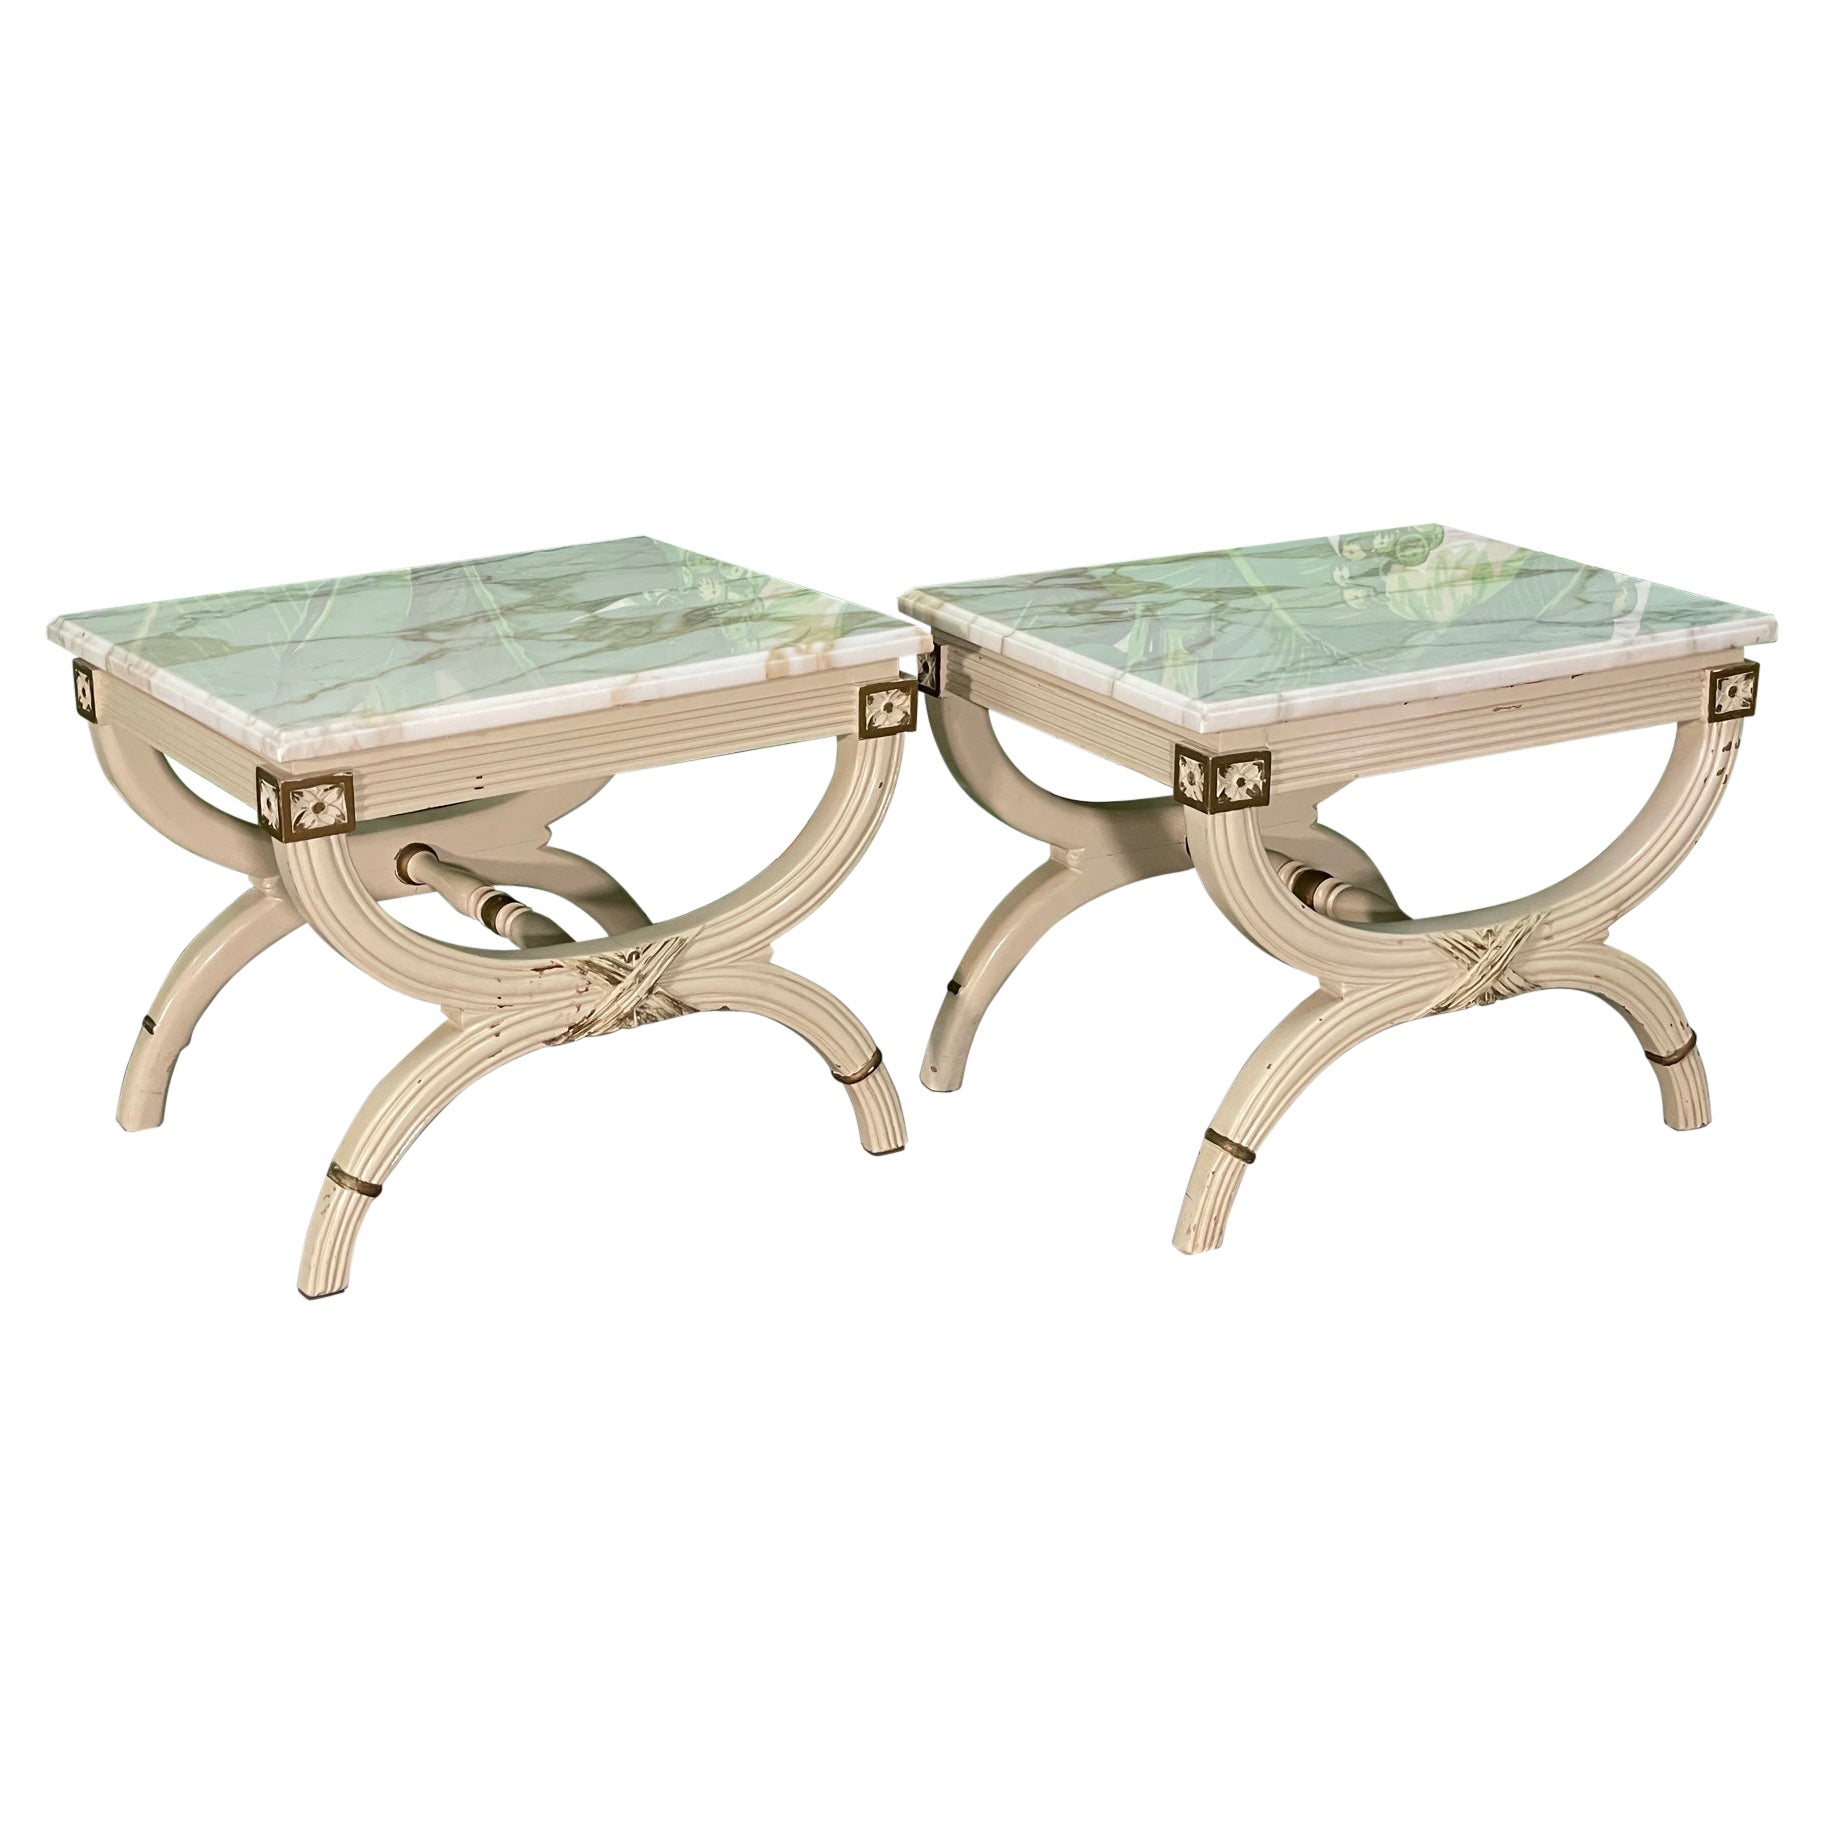 Tables d'extrémité ou poufs néoclassiques Dorothy Draper style néoclassique